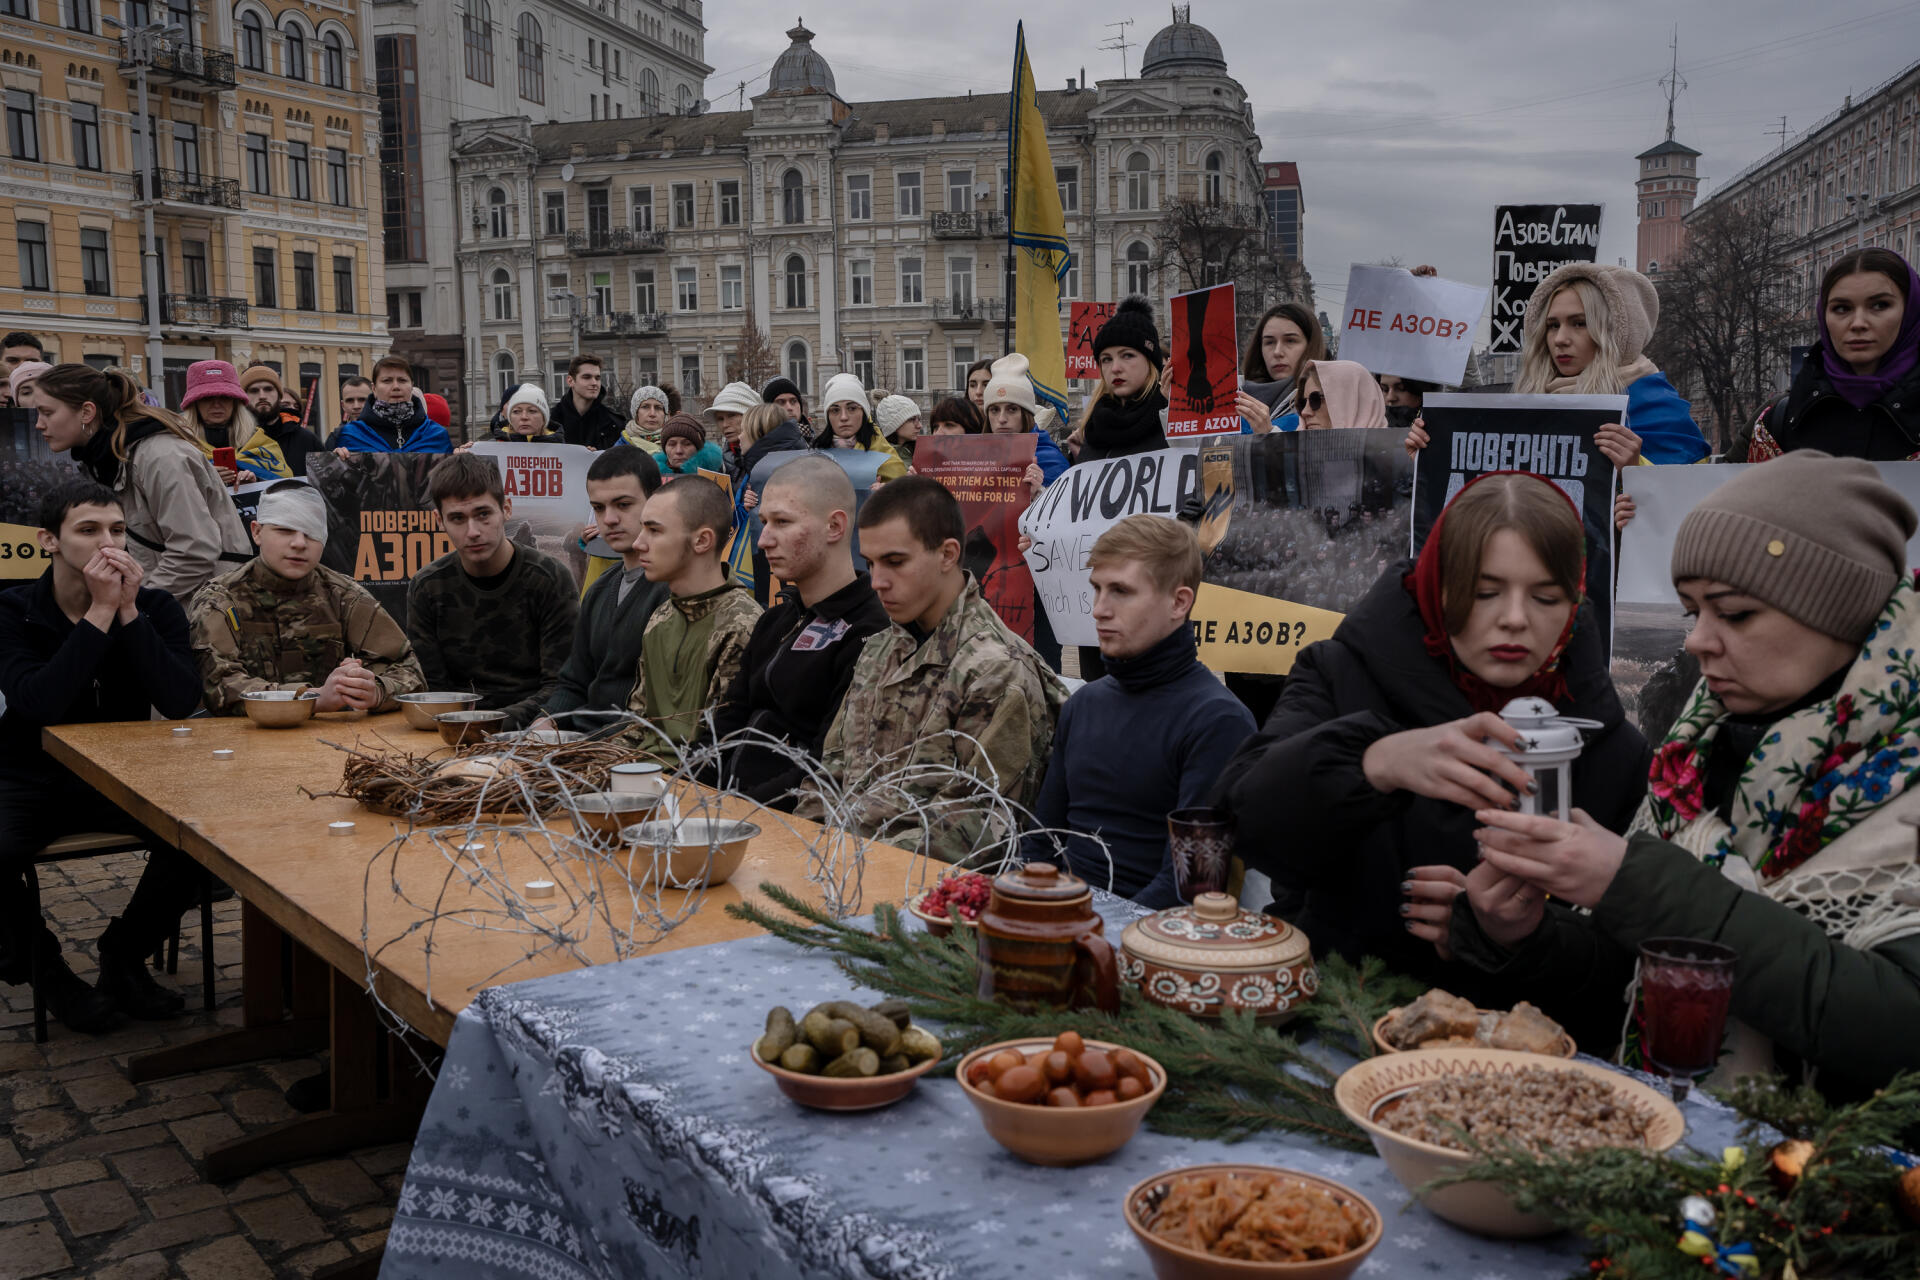 Des soldats se retrouvent face à une table vide alors que des femmes fêtent normalement Noël, lors d’une performance réalisée afin d'attirer l'attention sur la captivité des prisonners d'Azovstal, qui continue pendant les fêtes. Sur la place Sophia, à Kiev, le 24 décembre 2022. 